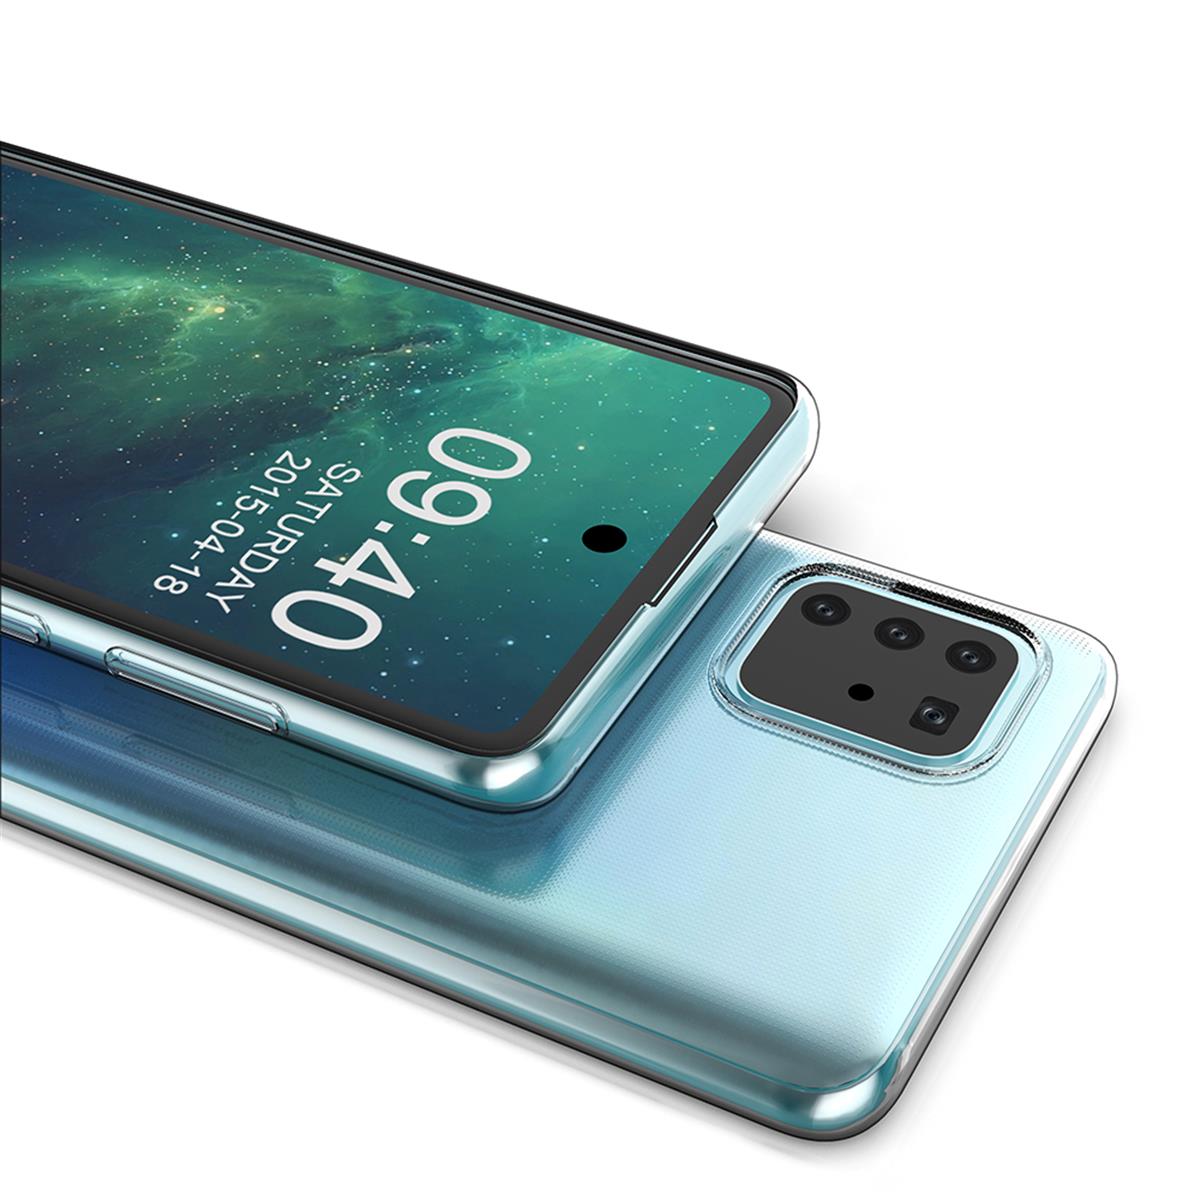 Hülle für Samsung Galaxy Note10 Lite Handyhülle Silikon Cover Bumper Case klar